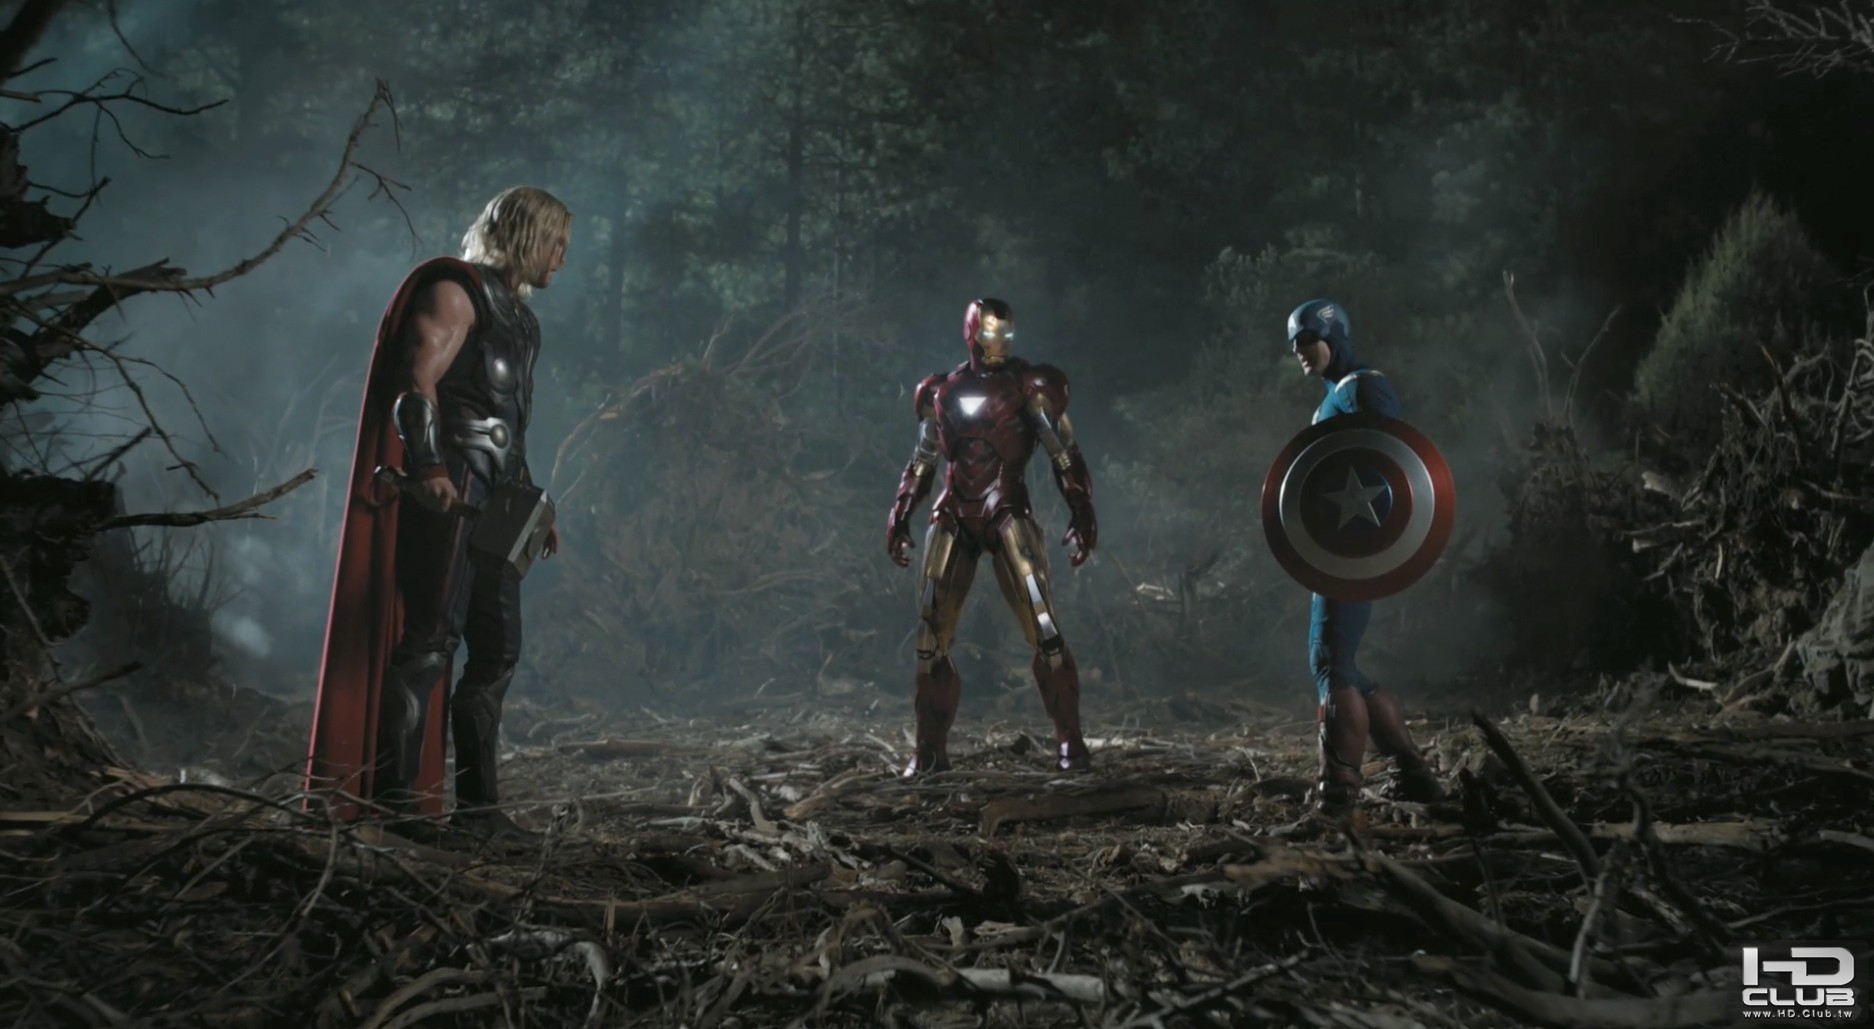 Chris-Evans-The-Avengers-Captain-America-5.jpg